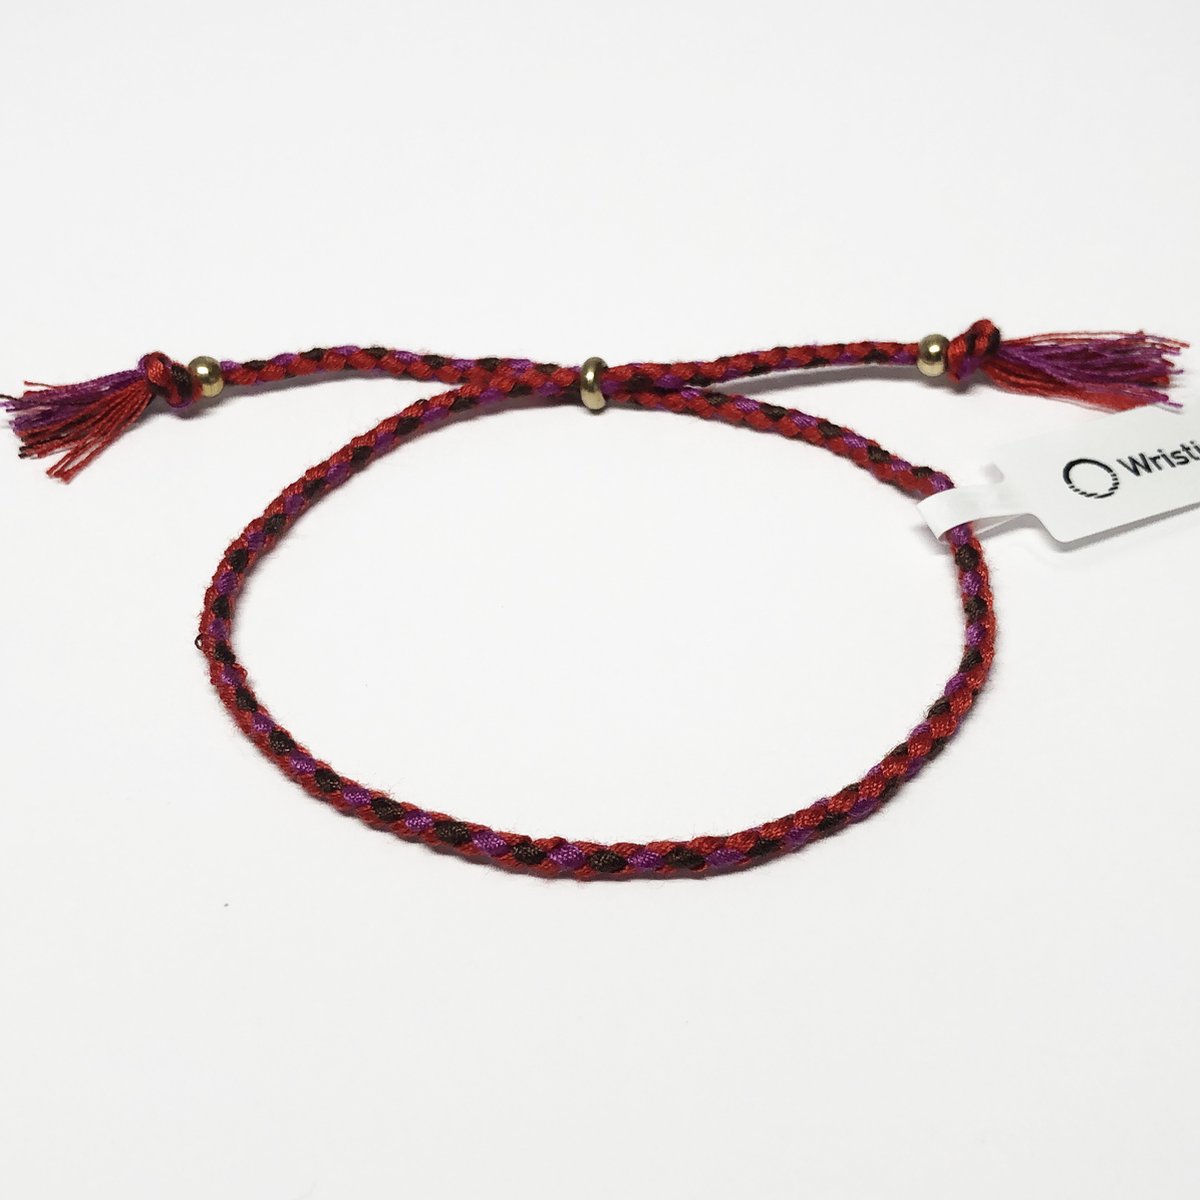 Wristin - Tibetaanse armband gevlochten rood/roze/bruin